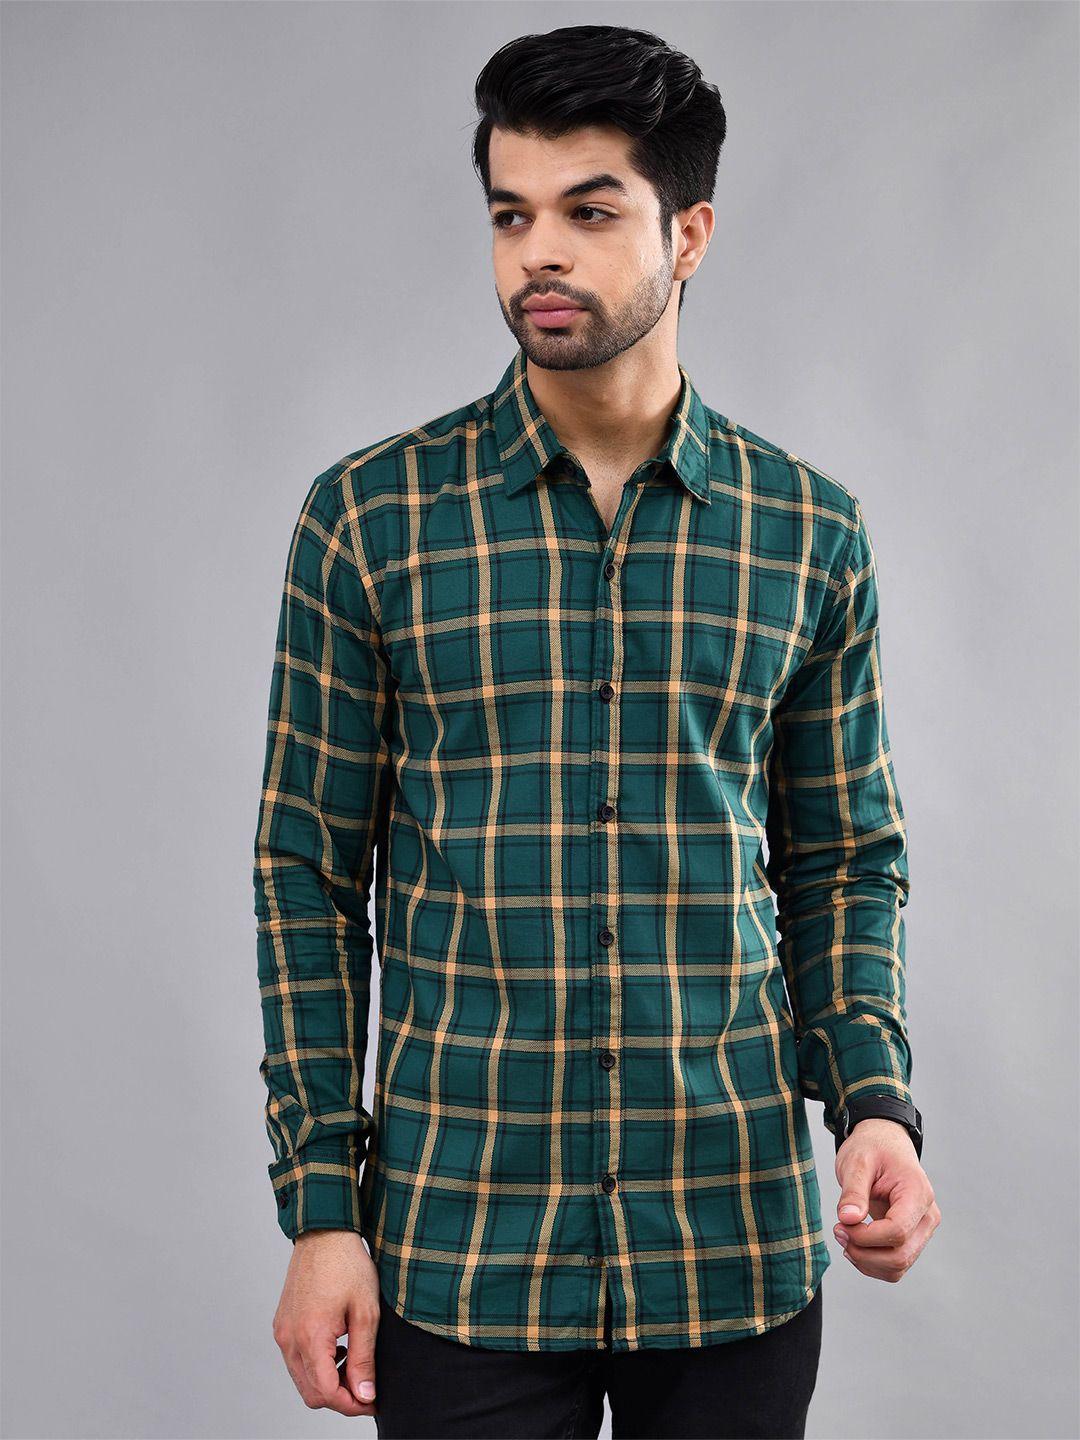 dezano men green modern tartan checks opaque checked casual shirt